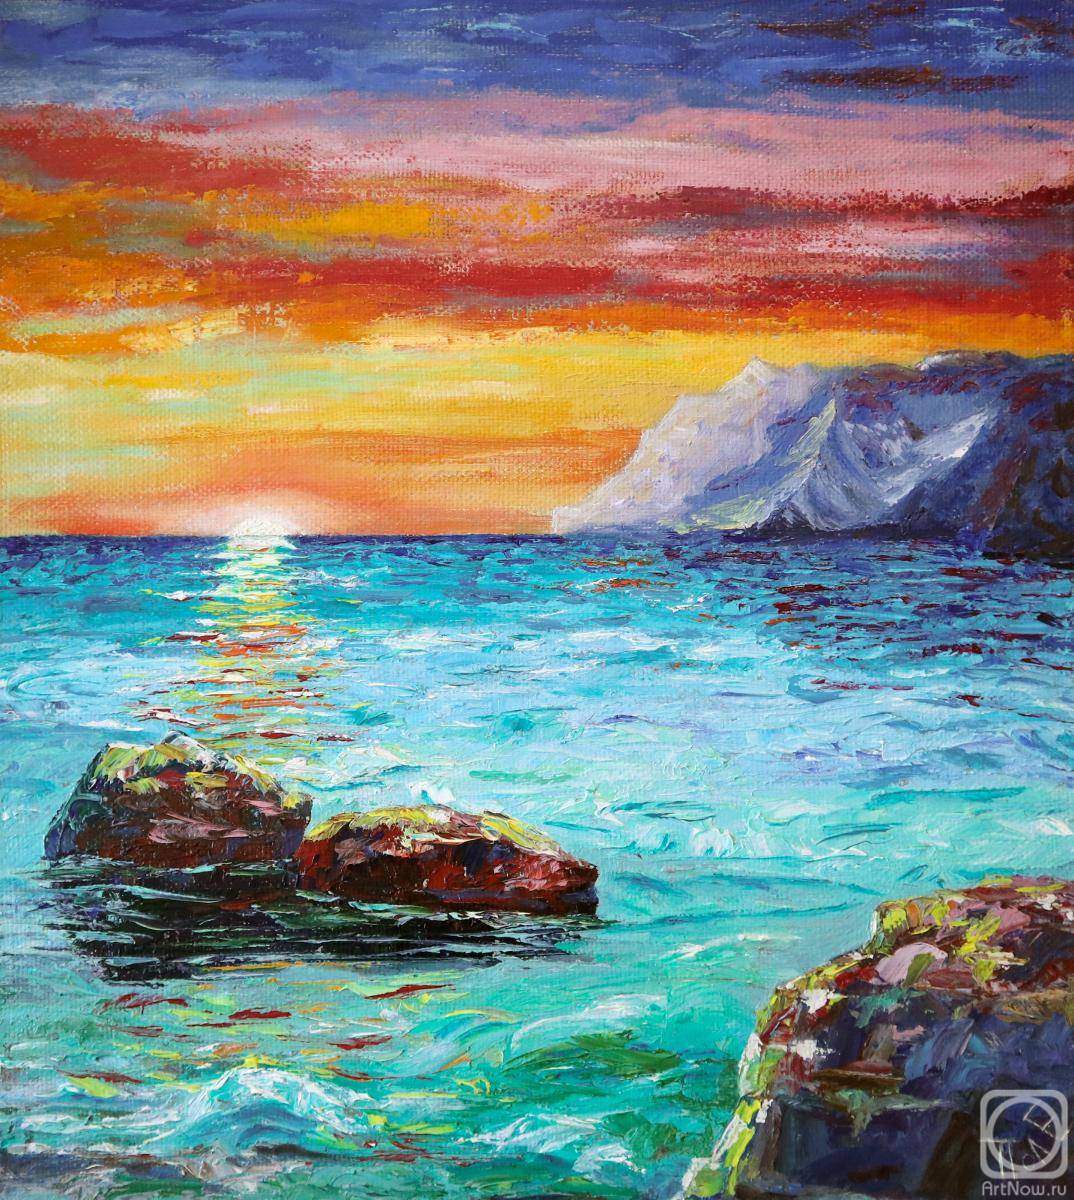 Polischuk Olga. The sea at sunset